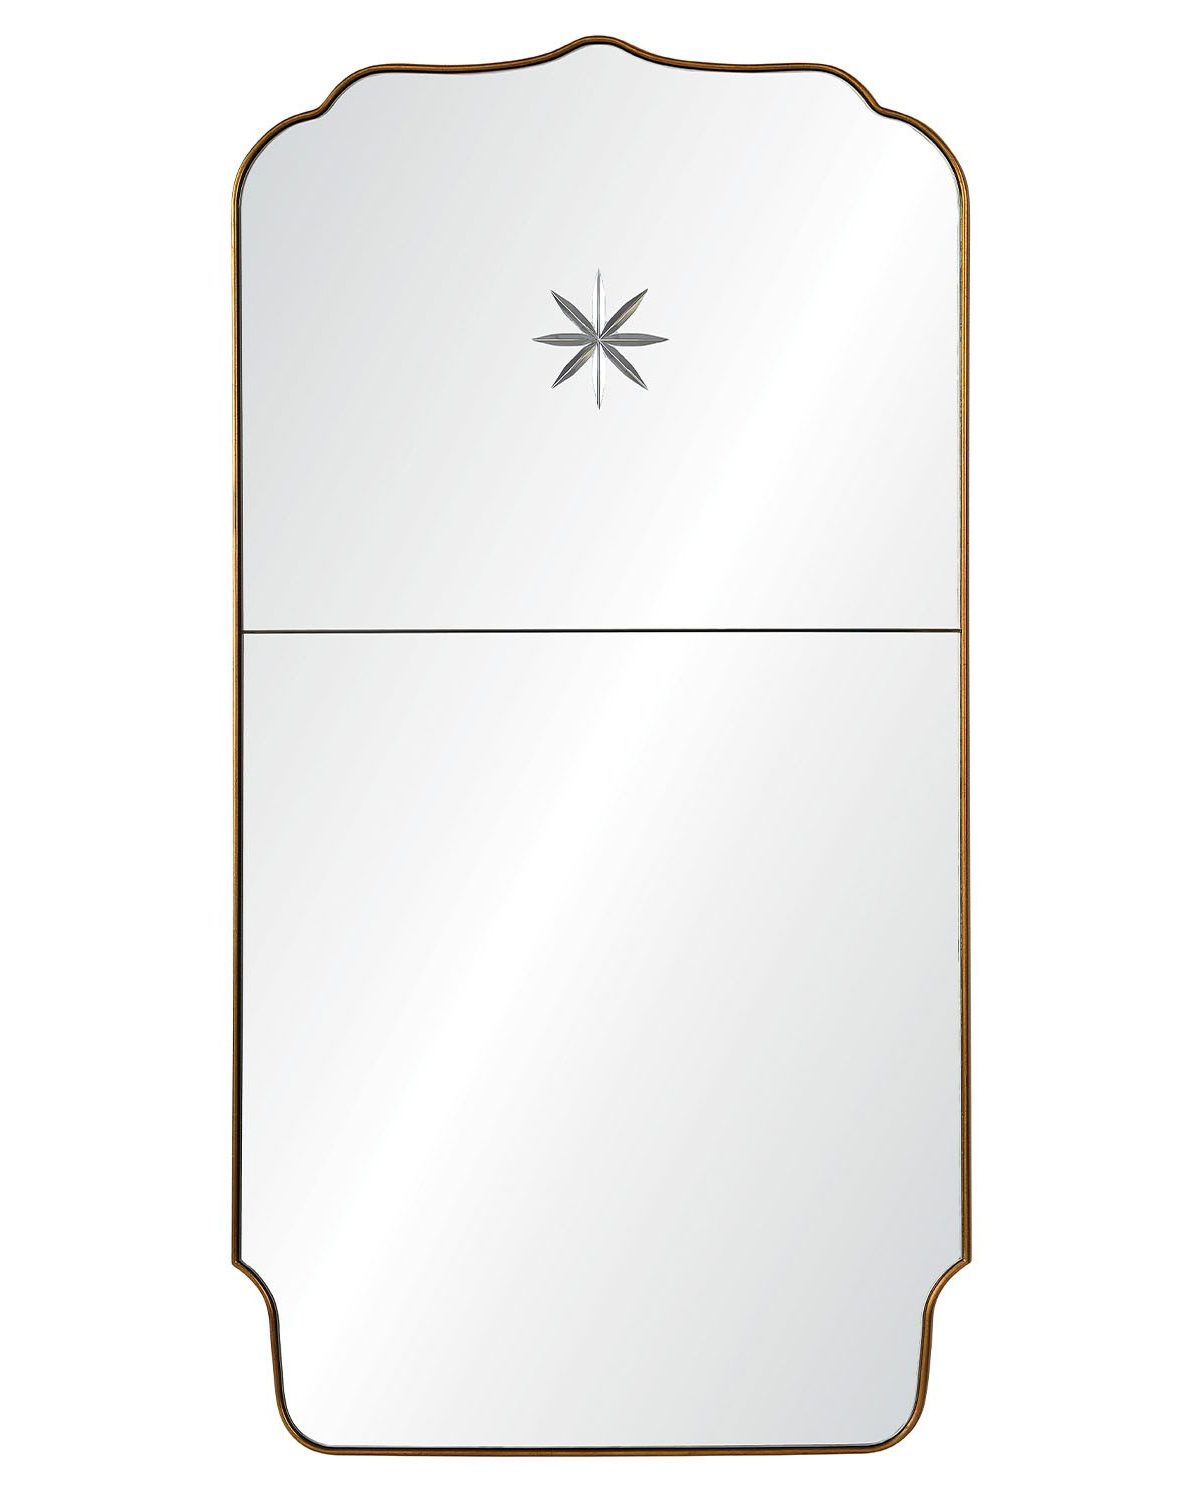 Трюмо с зеркалом "Тартюф" с тонкой латунной рамой и выгравированной звездой в верхней части.